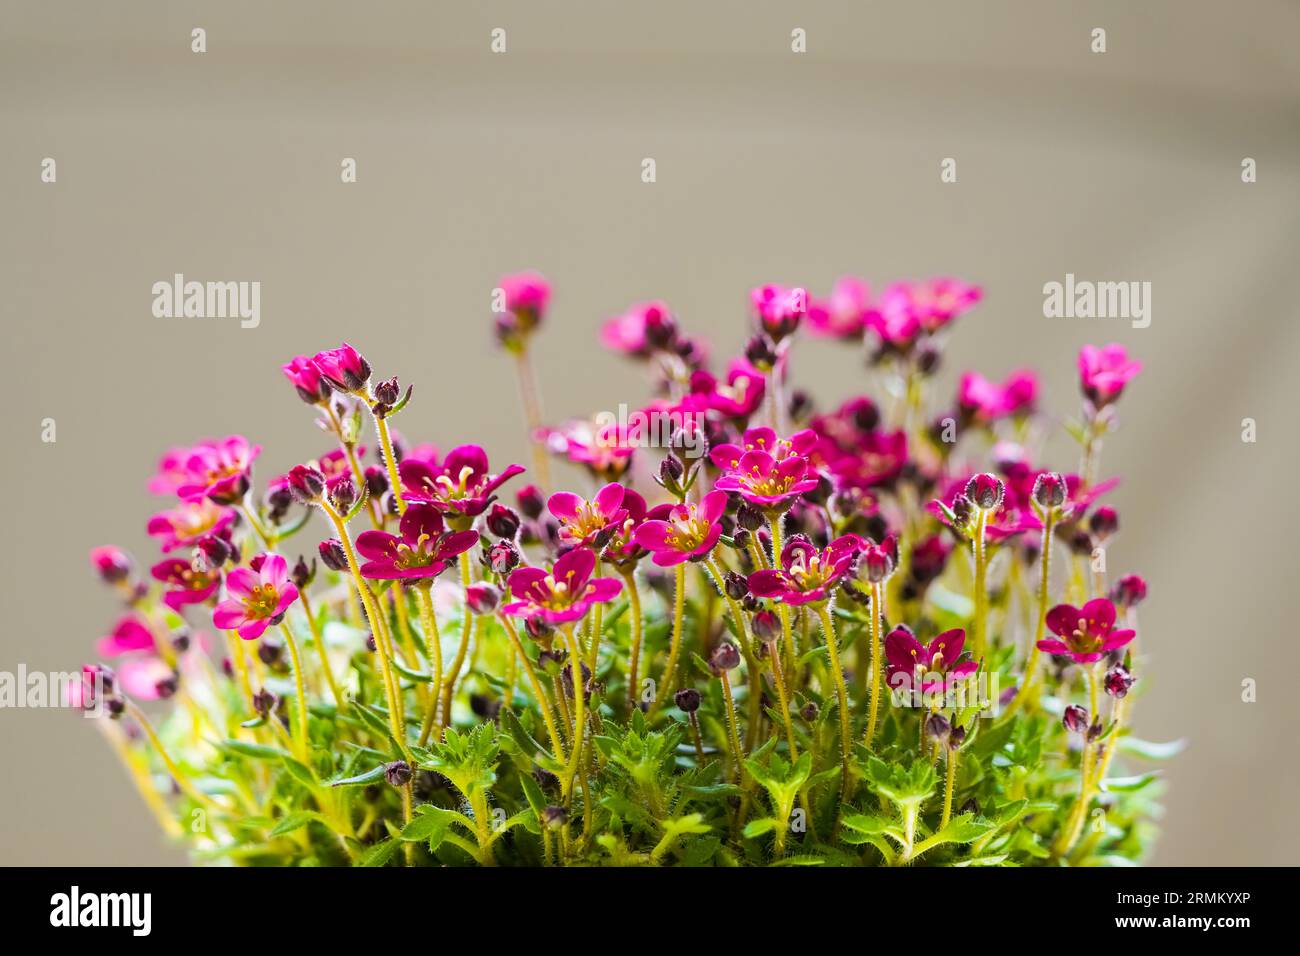 Pink saxifrage flowers. Flowering plant. Saxifraga. Stock Photo